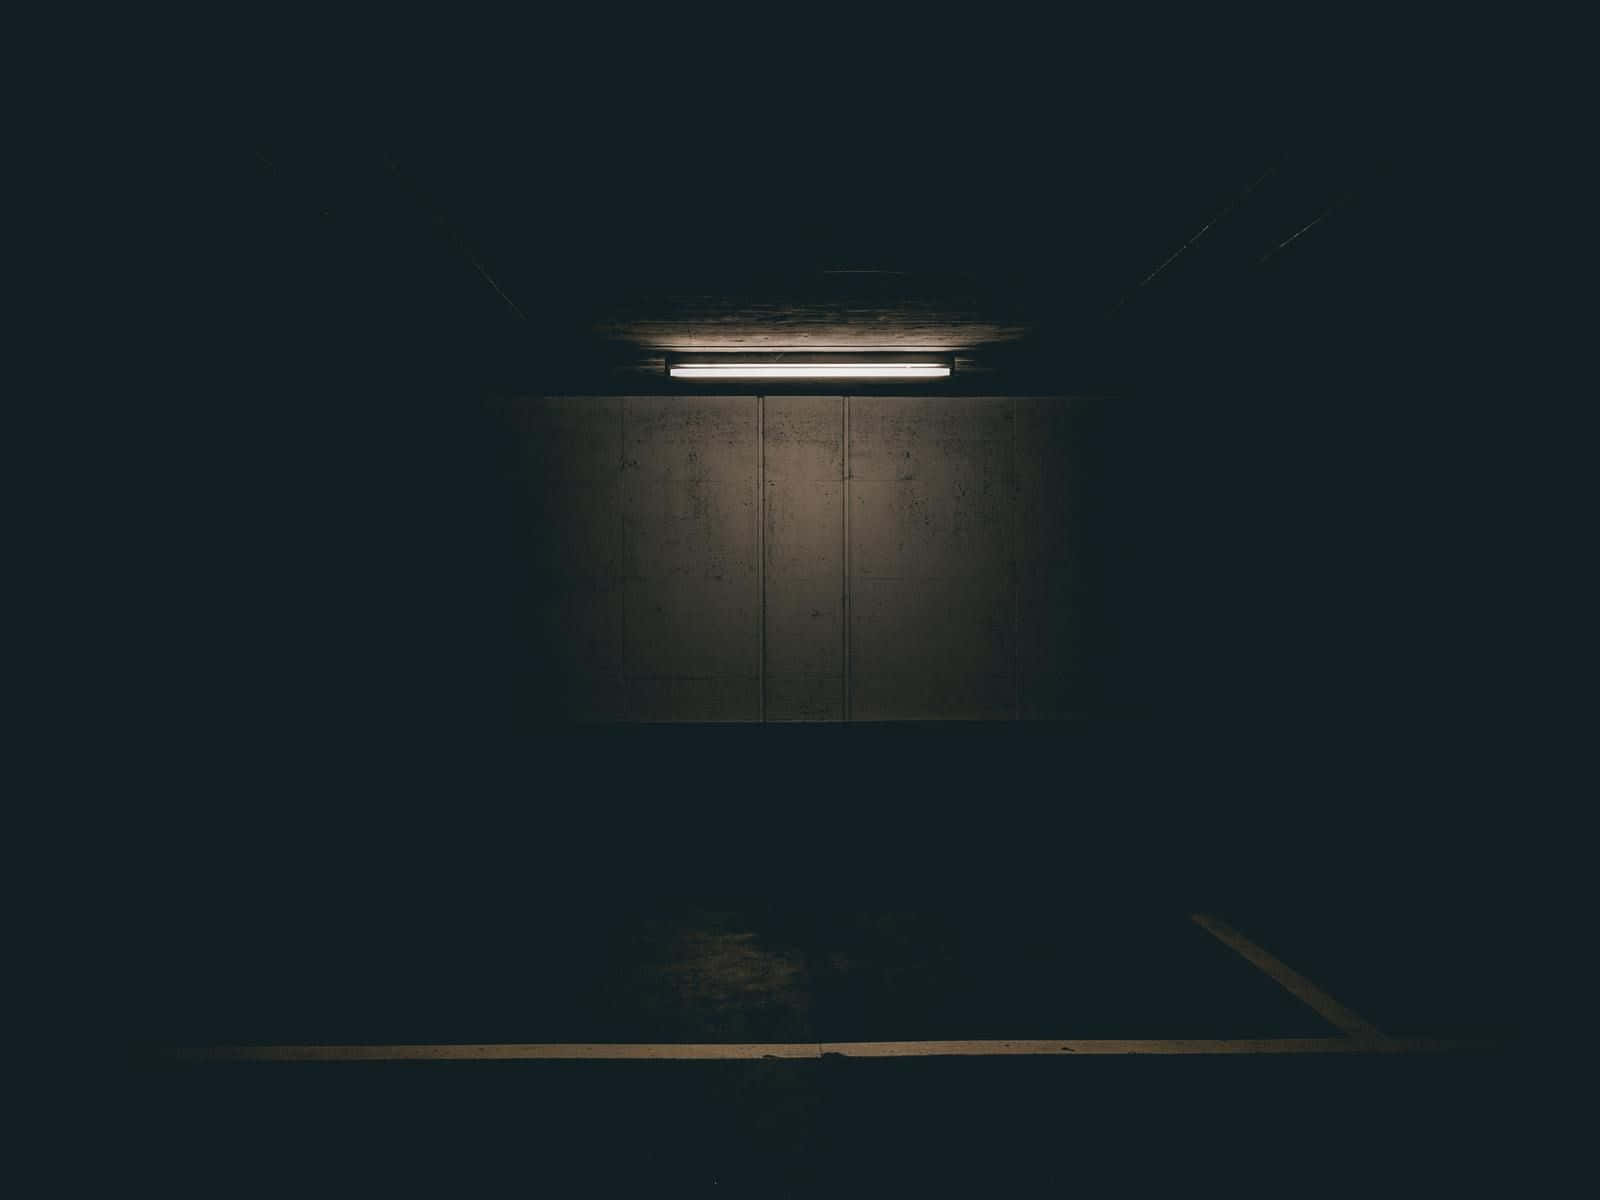 Ungarage Di Parcheggio Buio Con Una Luce Che Brilla Su Di Esso